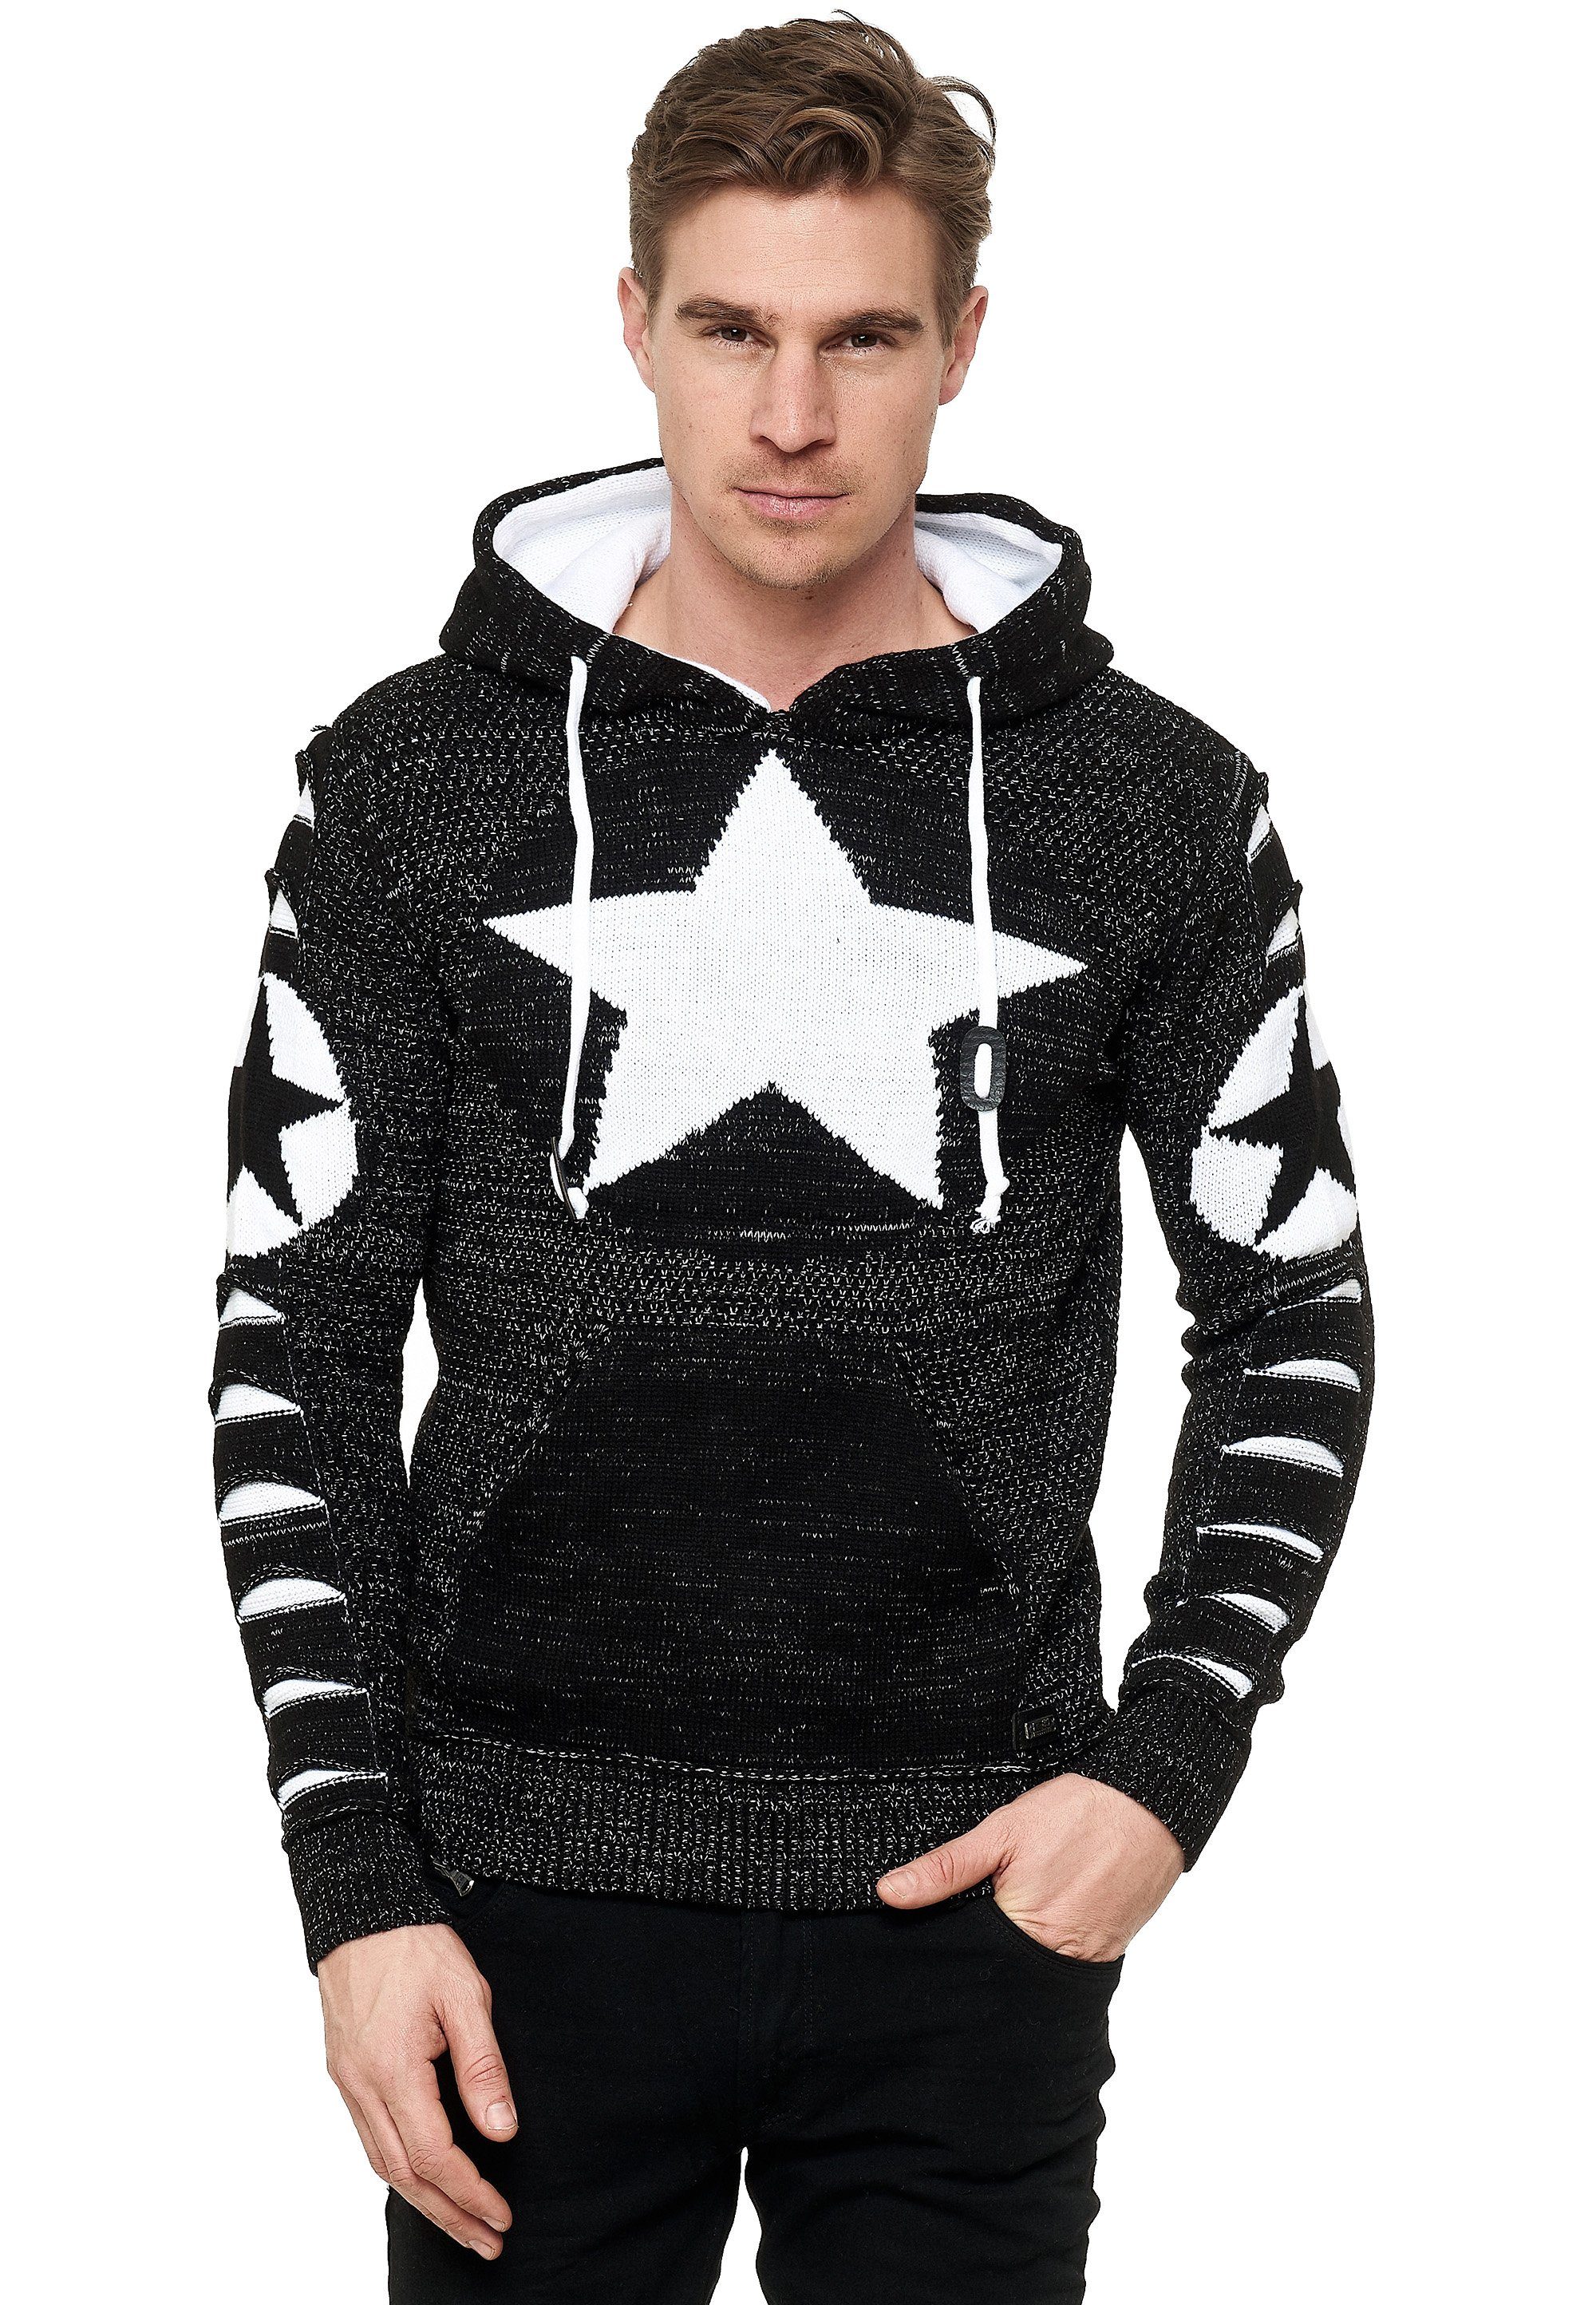 Rusty Neal Kapuzensweatshirt mit großem Stern-Design schwarz-weiß